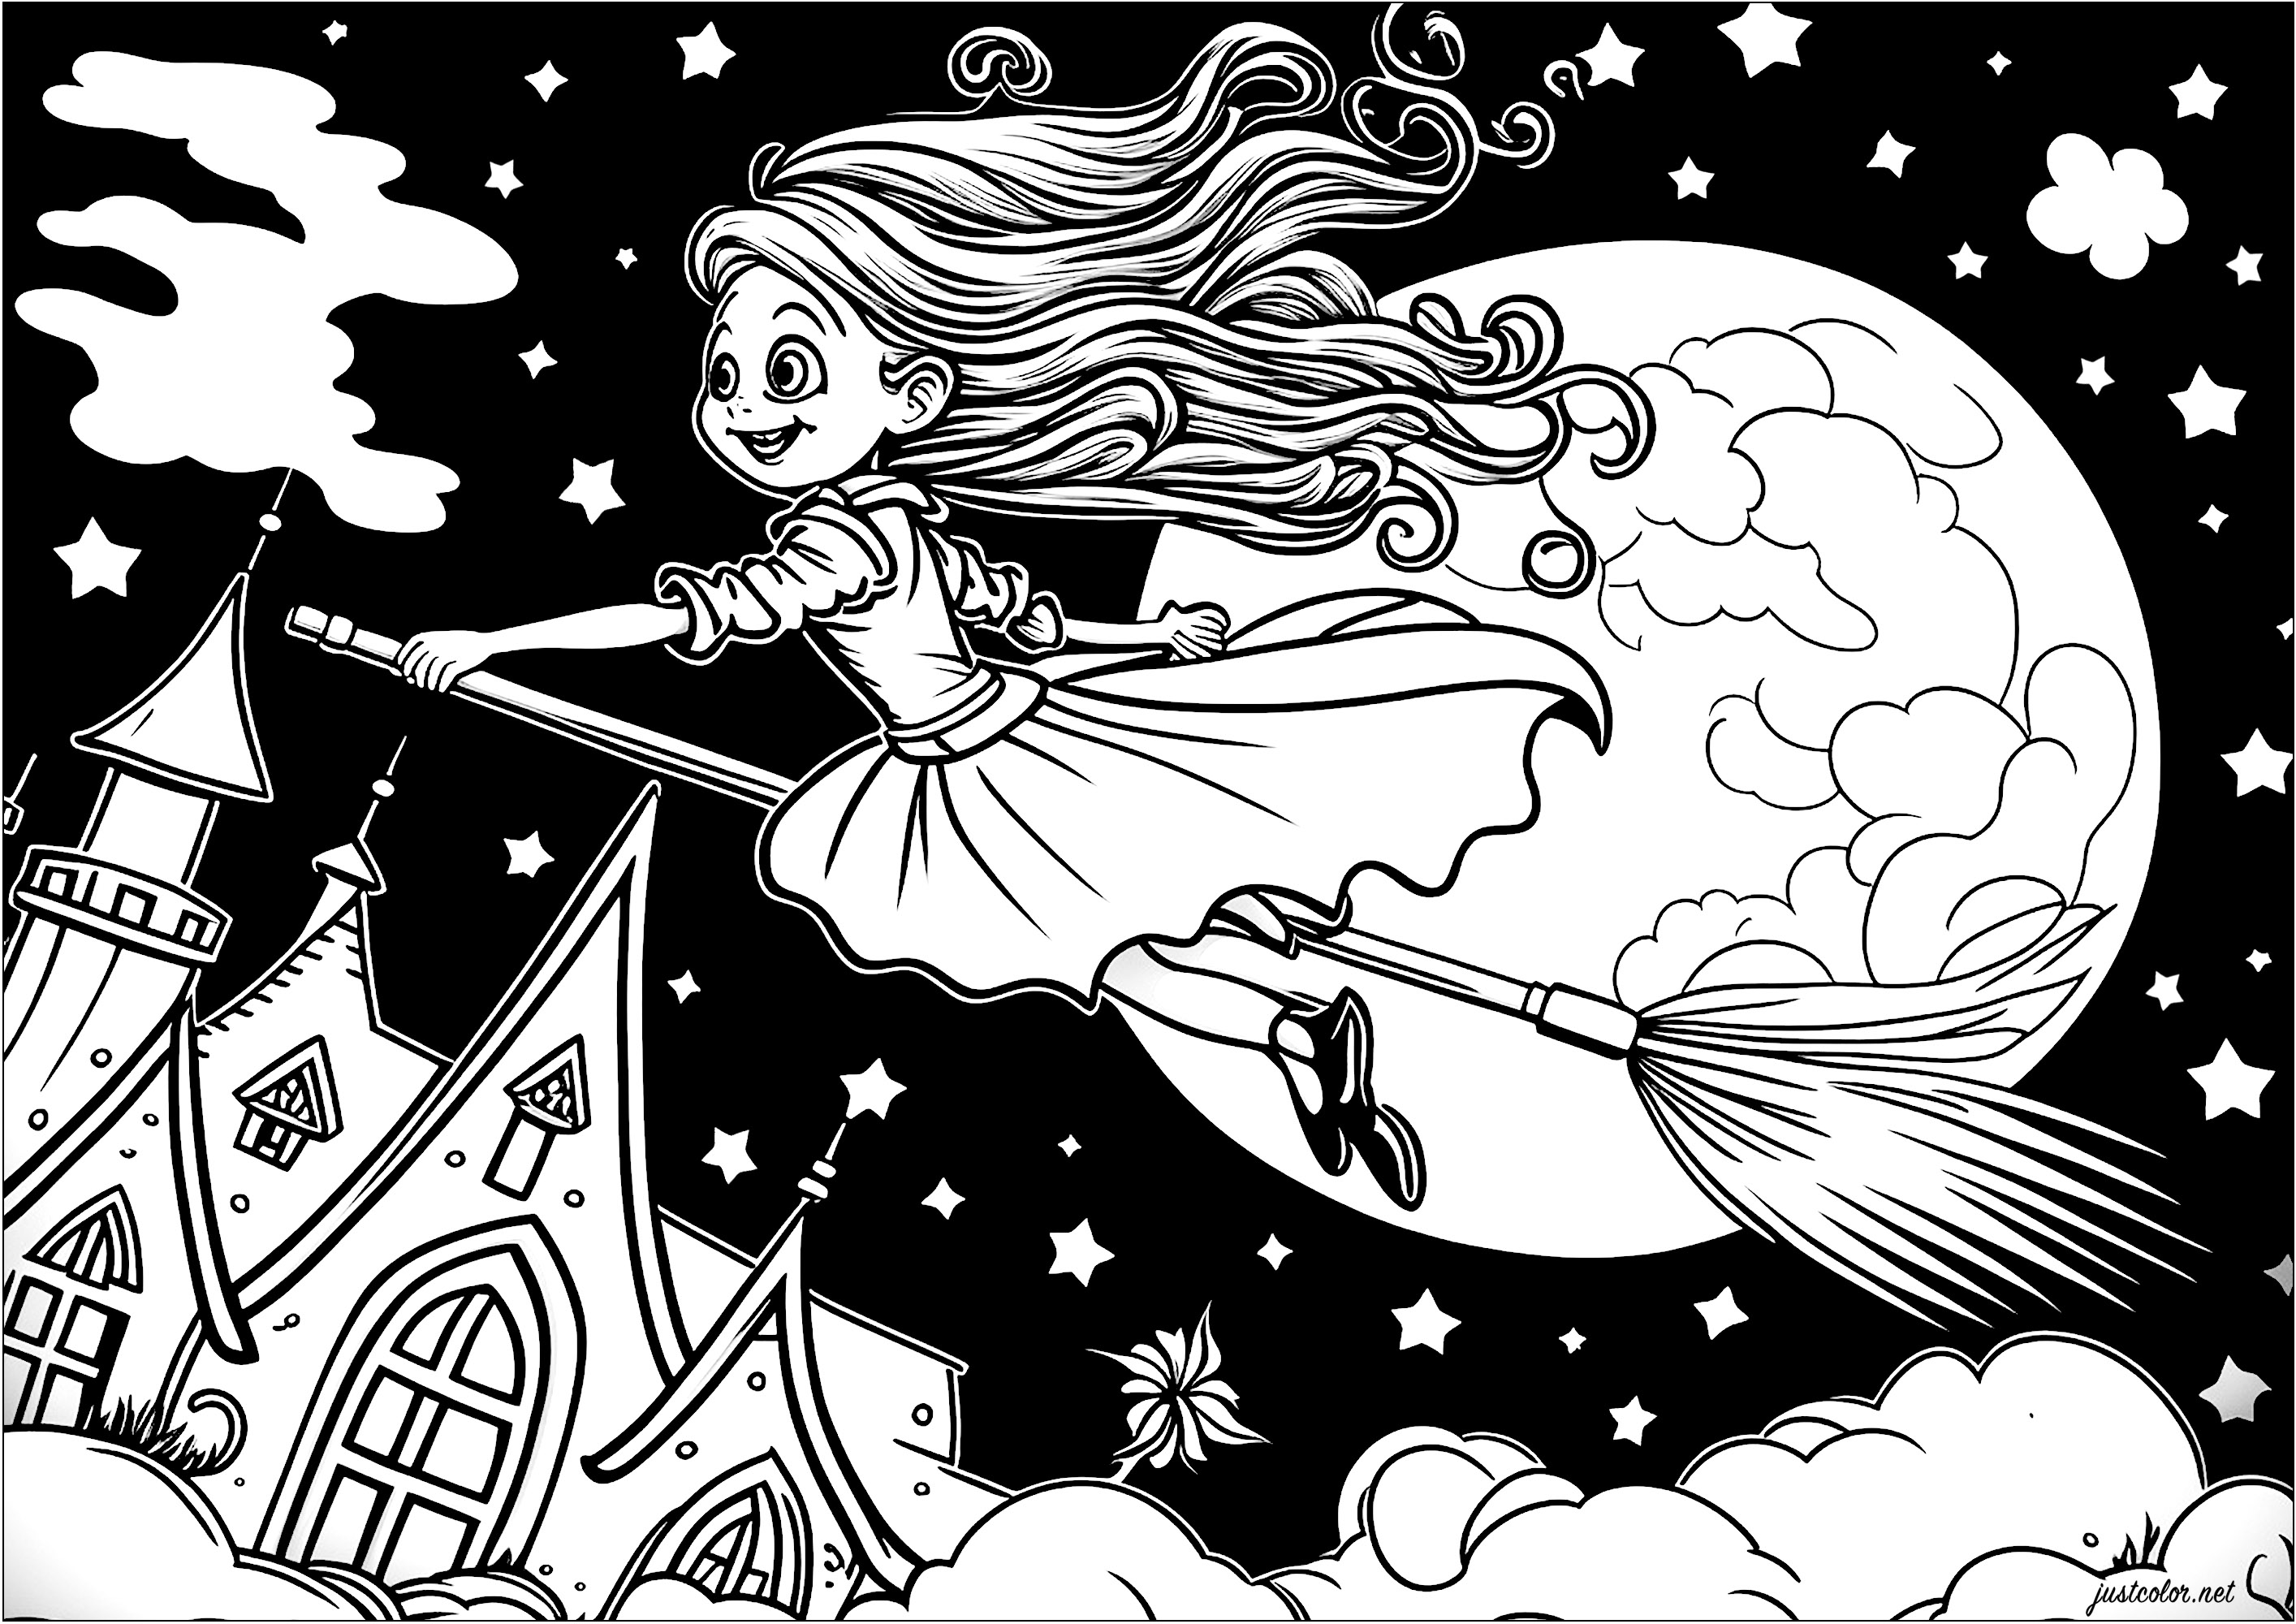 Coloriage d'une jeune sorcière volant sur son balais. Voici une jolie sorcière représentée sur son balais volant dans les airs, au dessus des nuages. Elle est vêtue d'une robe longue et élégante, et elle a les cheveux dans le vent.
